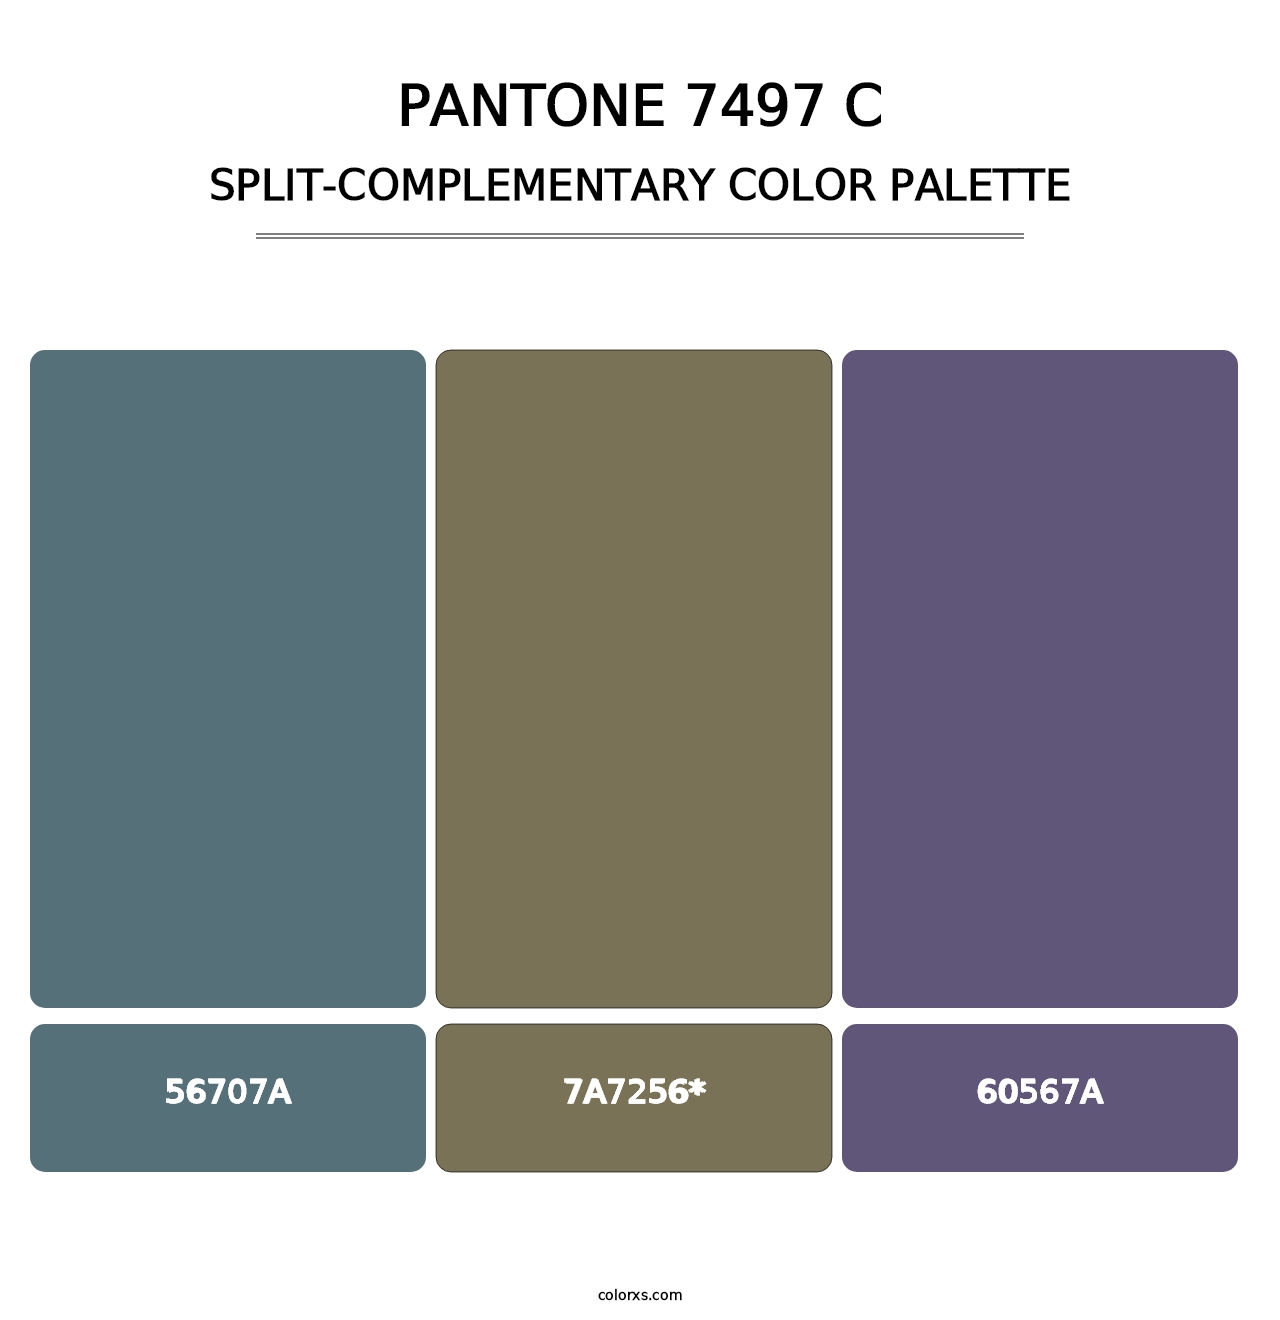 PANTONE 7497 C - Split-Complementary Color Palette